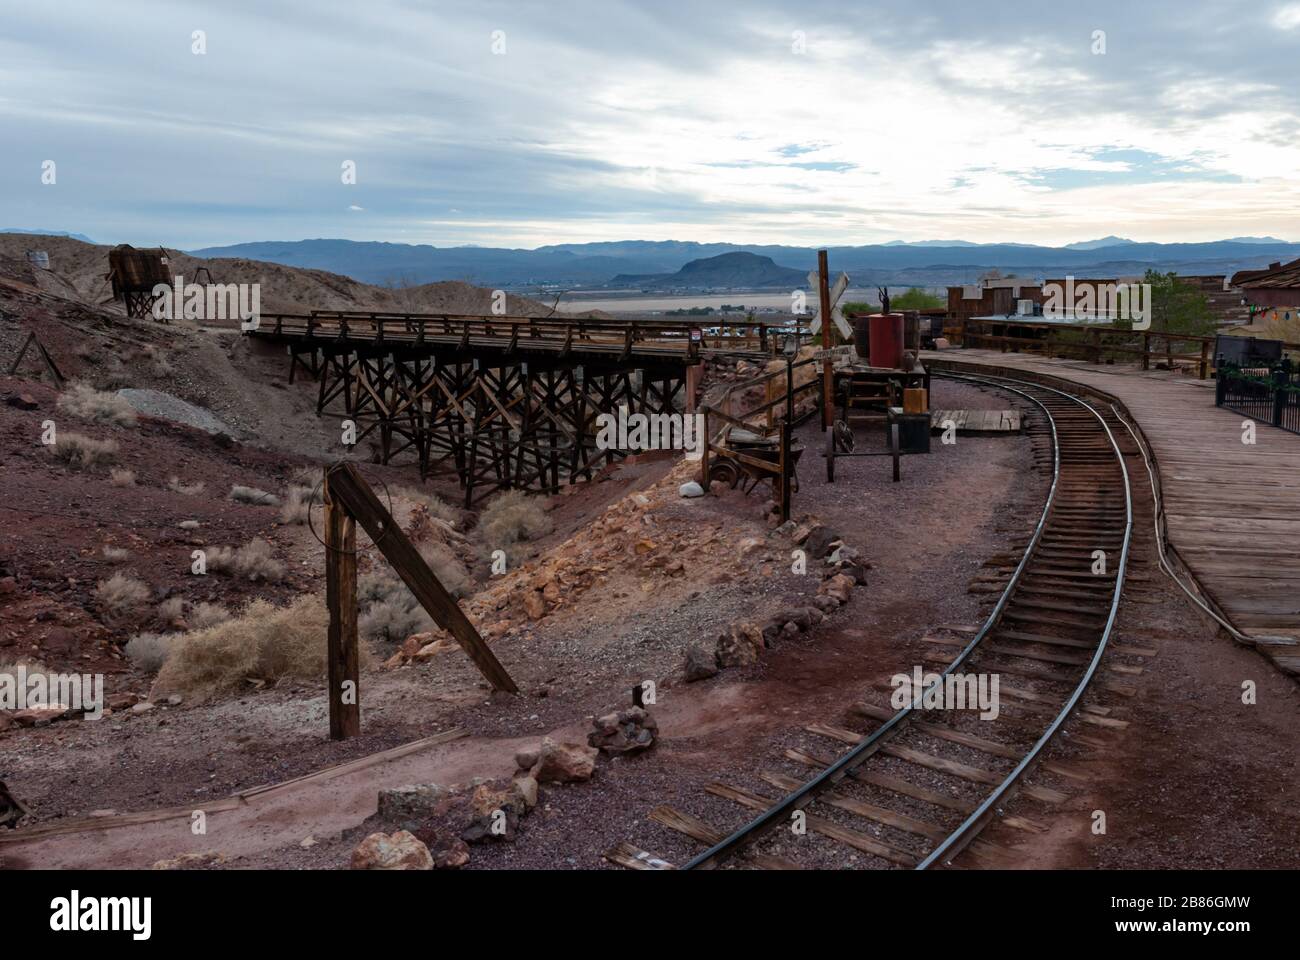 Die Eisenbahn in Calico führt eine Tour durch die alten Bergwerke der Geisterstadt Calico in den Calico Mountains der Mojave-Wüste bei Barstow, San Bernardino County. Stockfoto